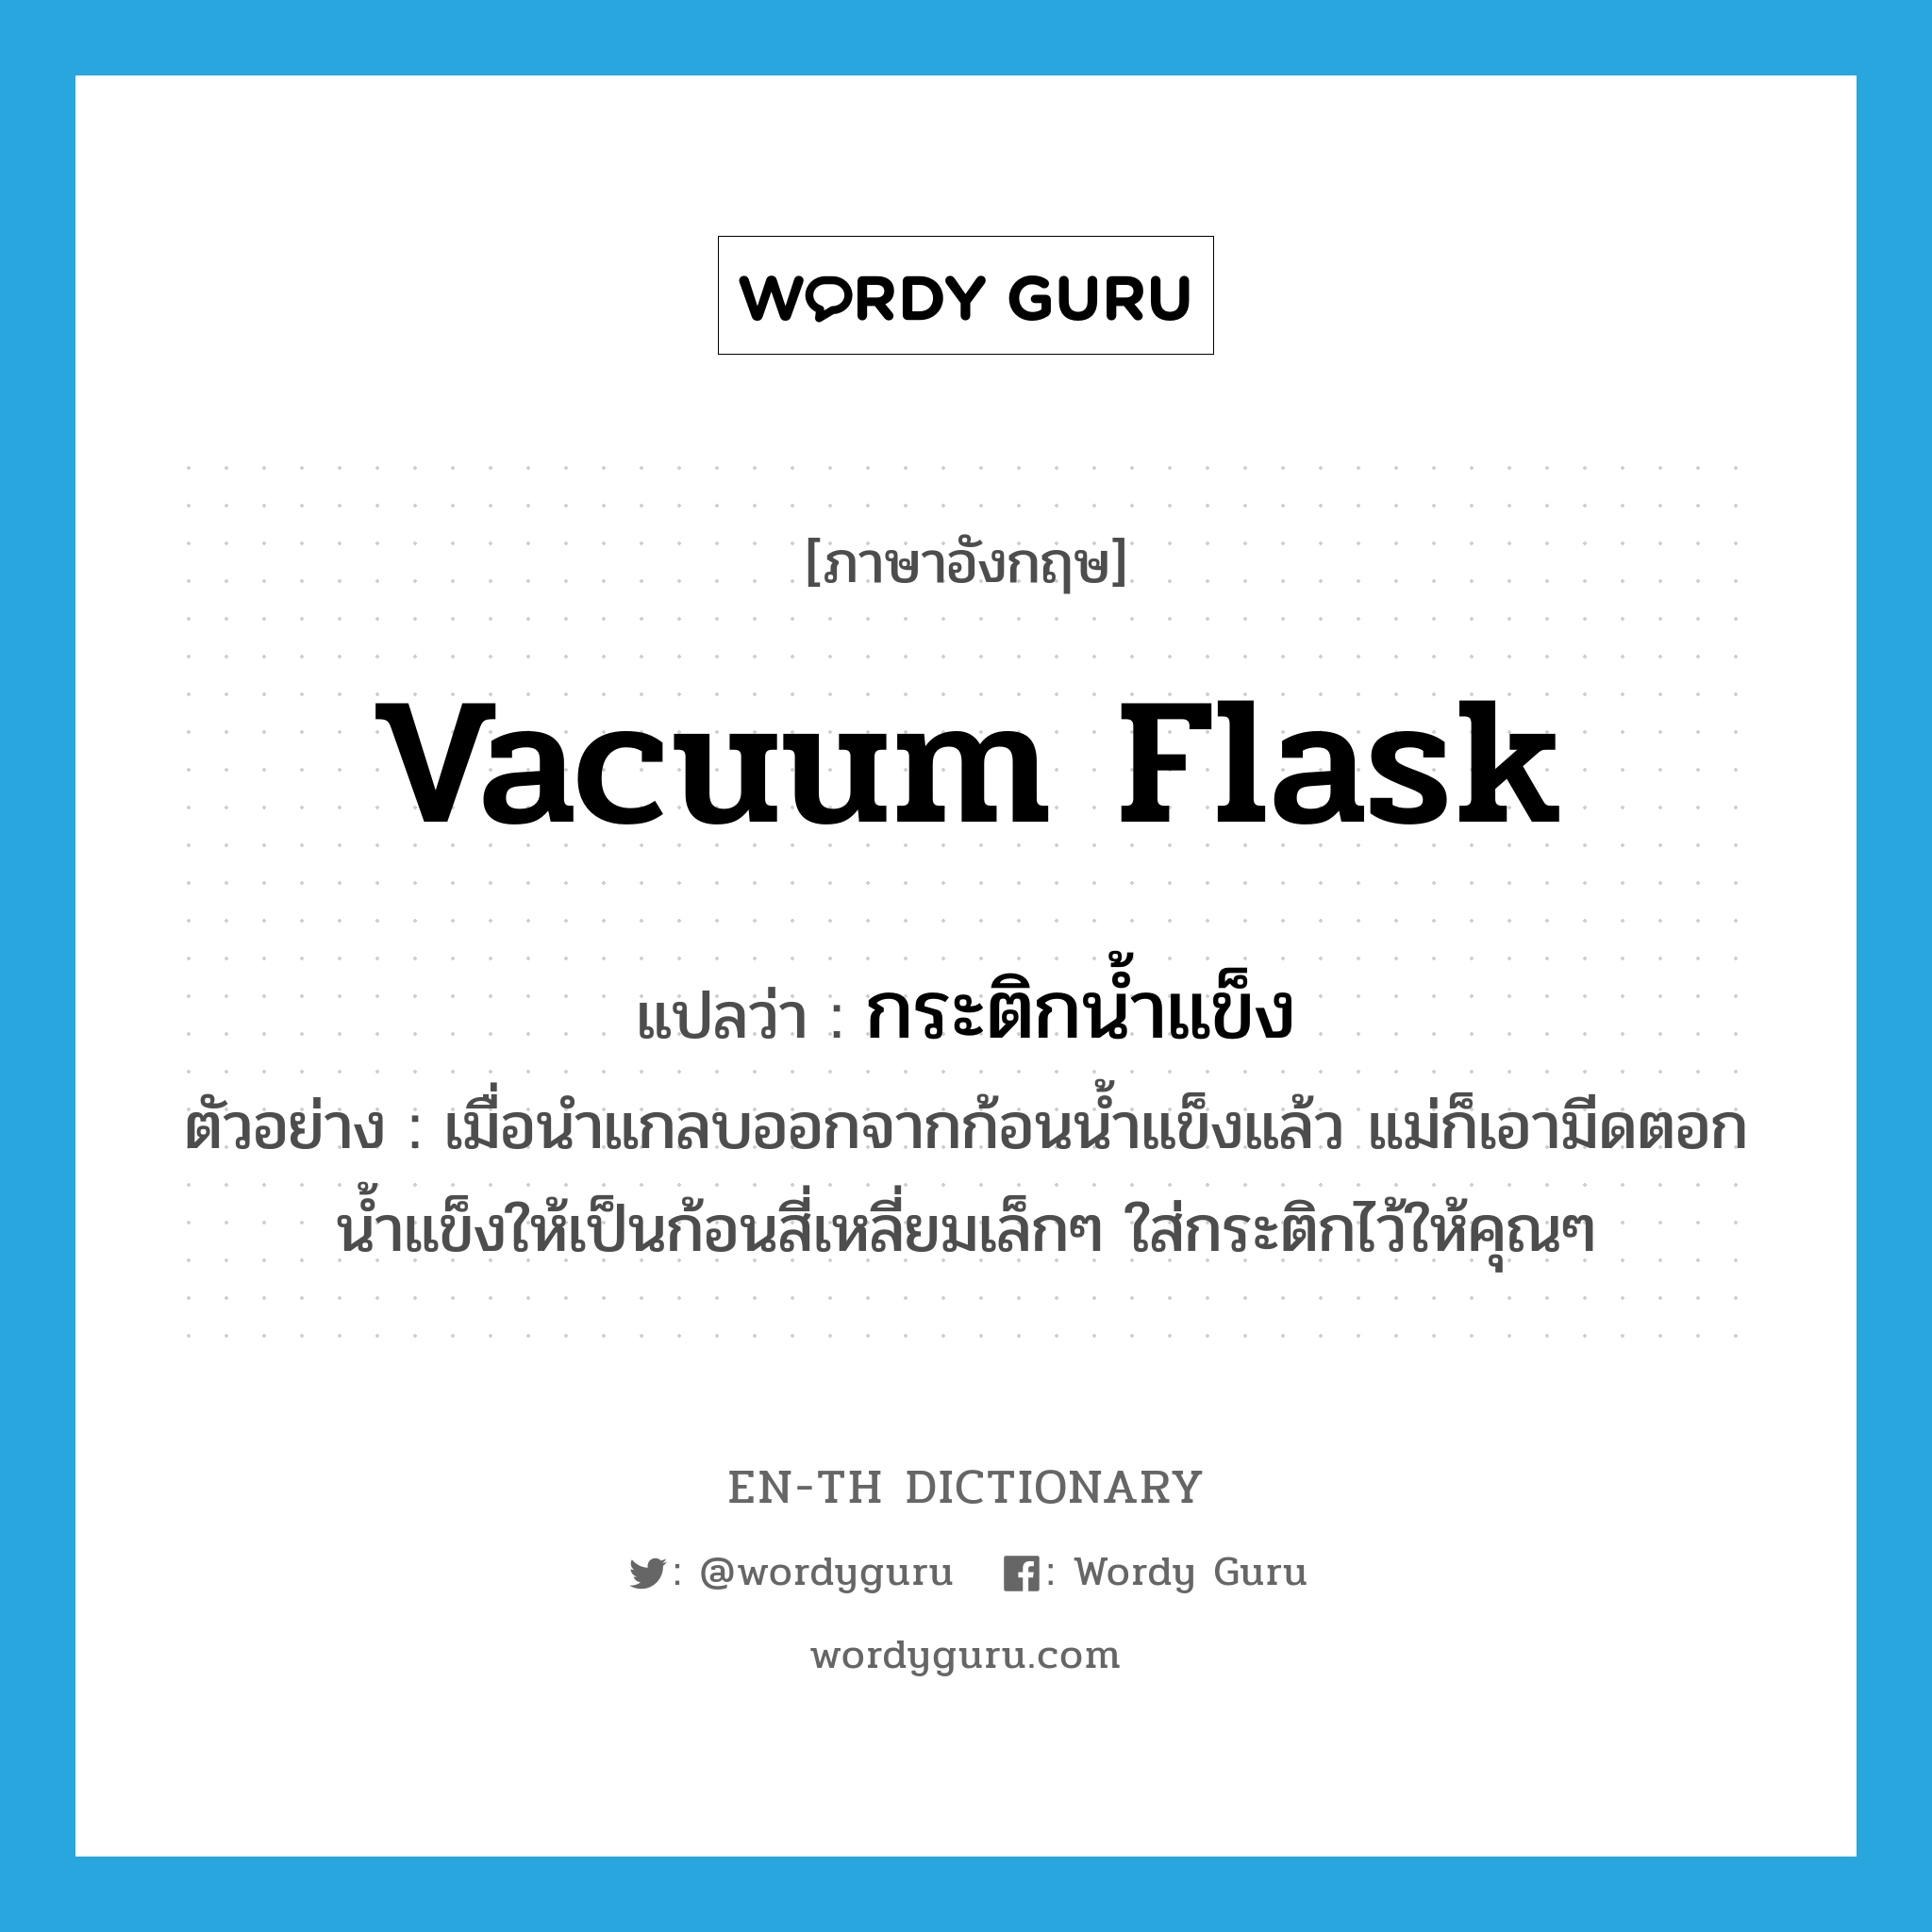 vacuum flask แปลว่า?, คำศัพท์ภาษาอังกฤษ vacuum flask แปลว่า กระติกน้ำแข็ง ประเภท N ตัวอย่าง เมื่อนำแกลบออกจากก้อนน้ำแข็งแล้ว แม่ก็เอามีดตอกน้ำแข็งให้เป็นก้อนสี่เหลี่ยมเล็กๆ ใส่กระติกไว้ให้คุณๆ หมวด N